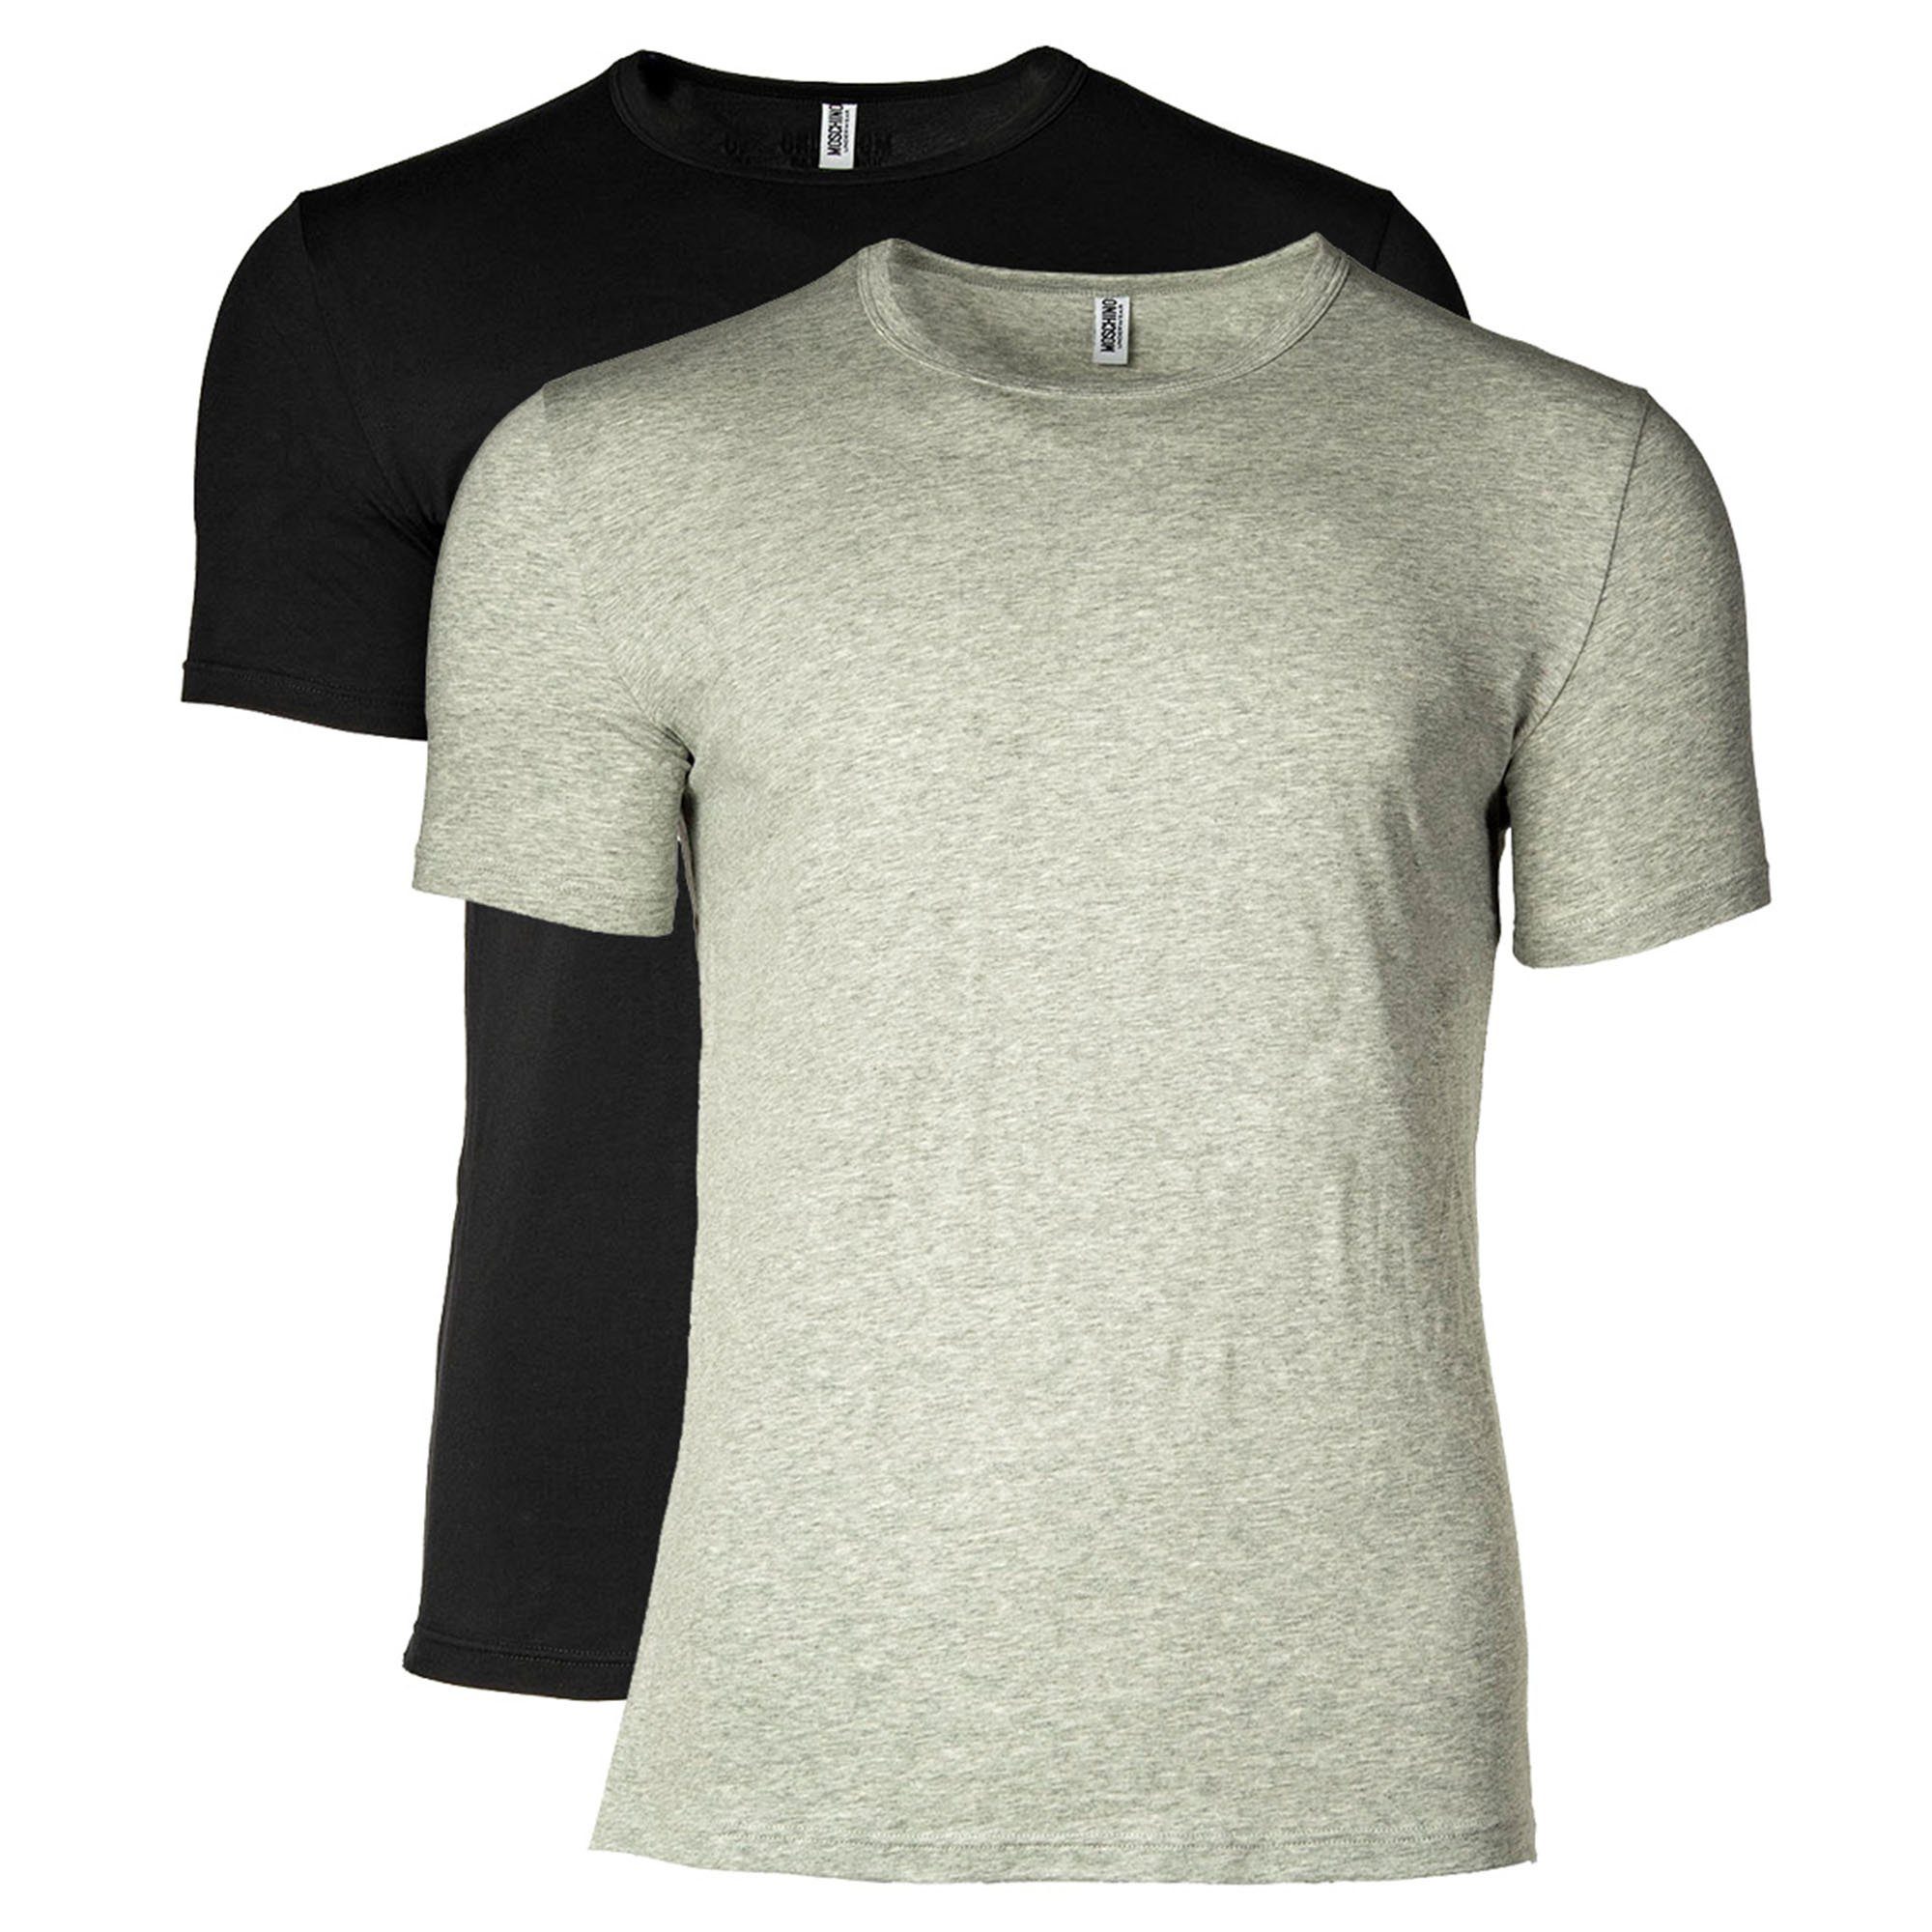 Moschino T-Shirt Herren T-Shirt 2er Pack - Crew Neck, Rundhals Grau/Schwarz